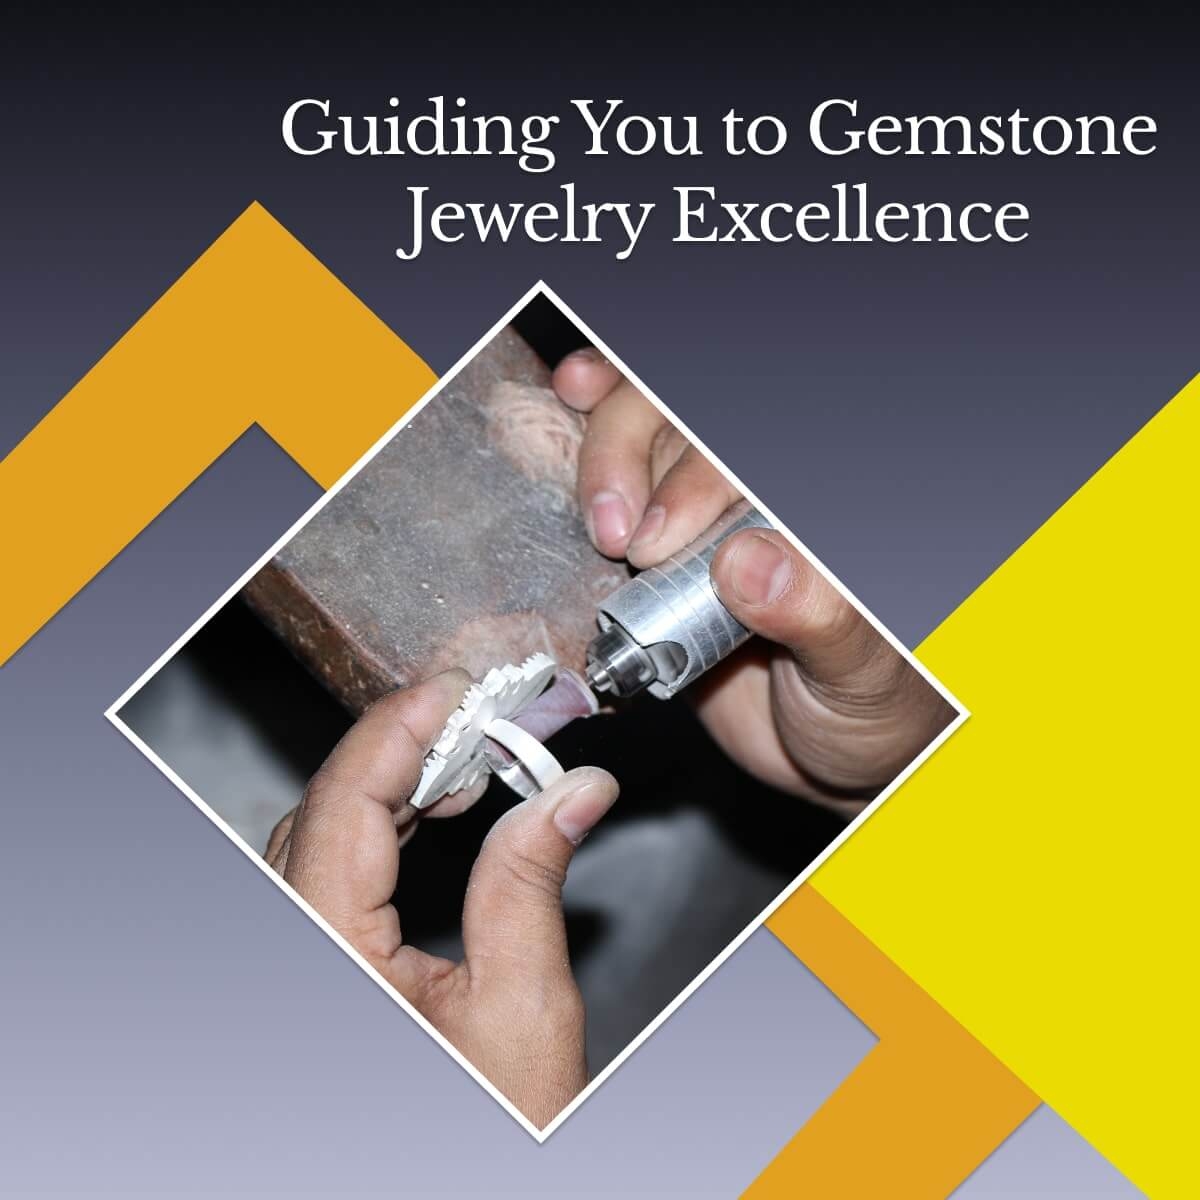 Gemstone Jewelry Manufacturer & Supplier